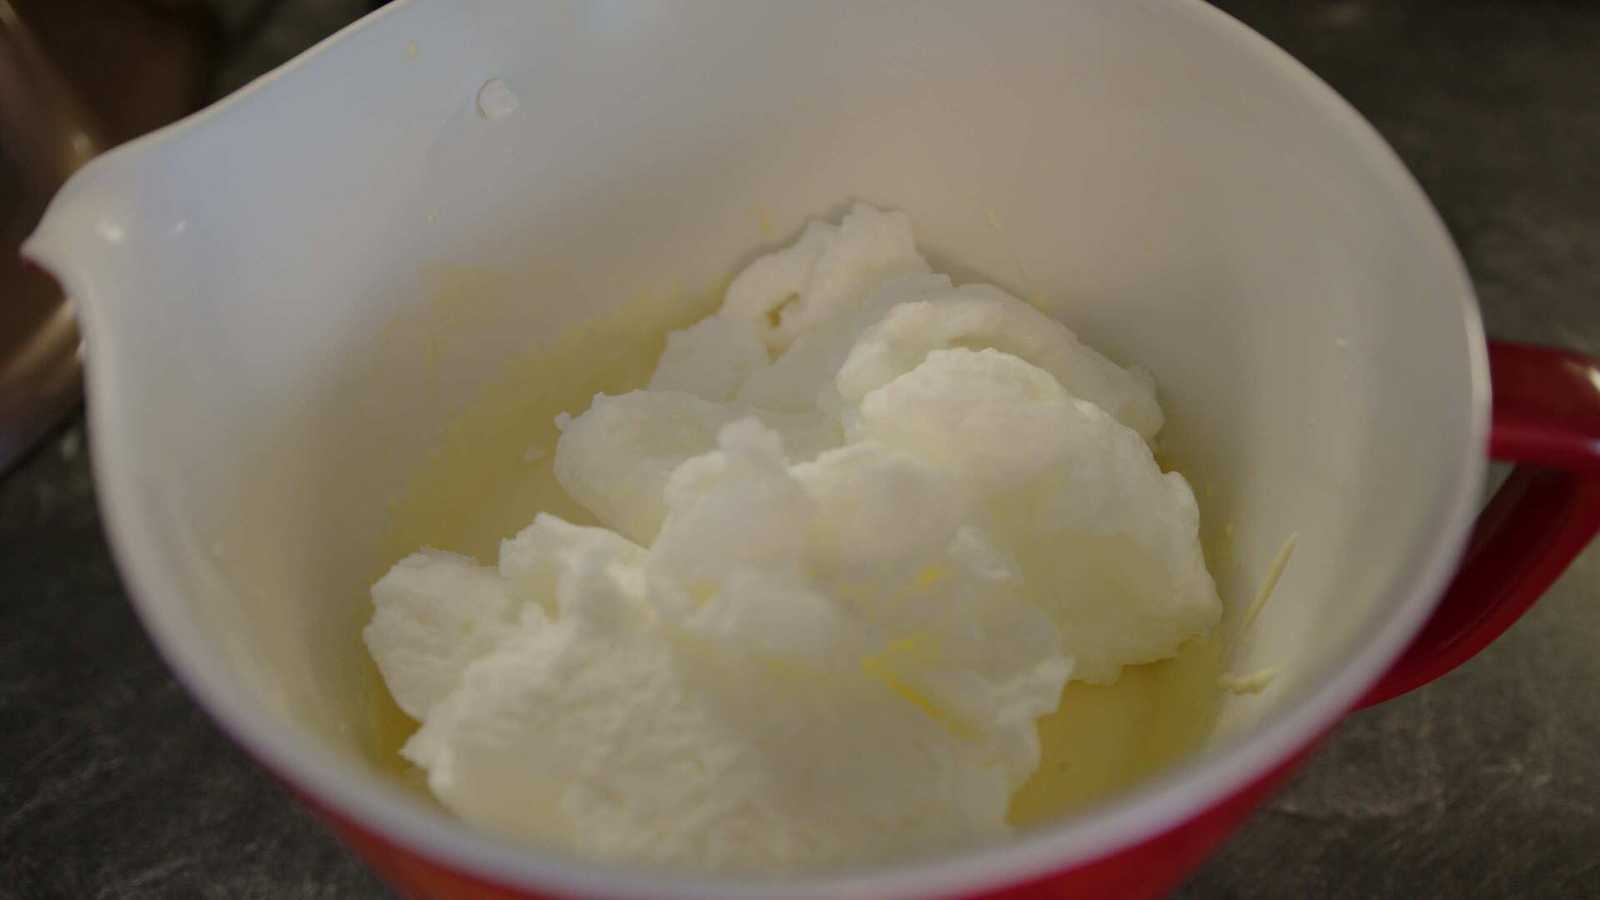 Beaten egg whites in bowl